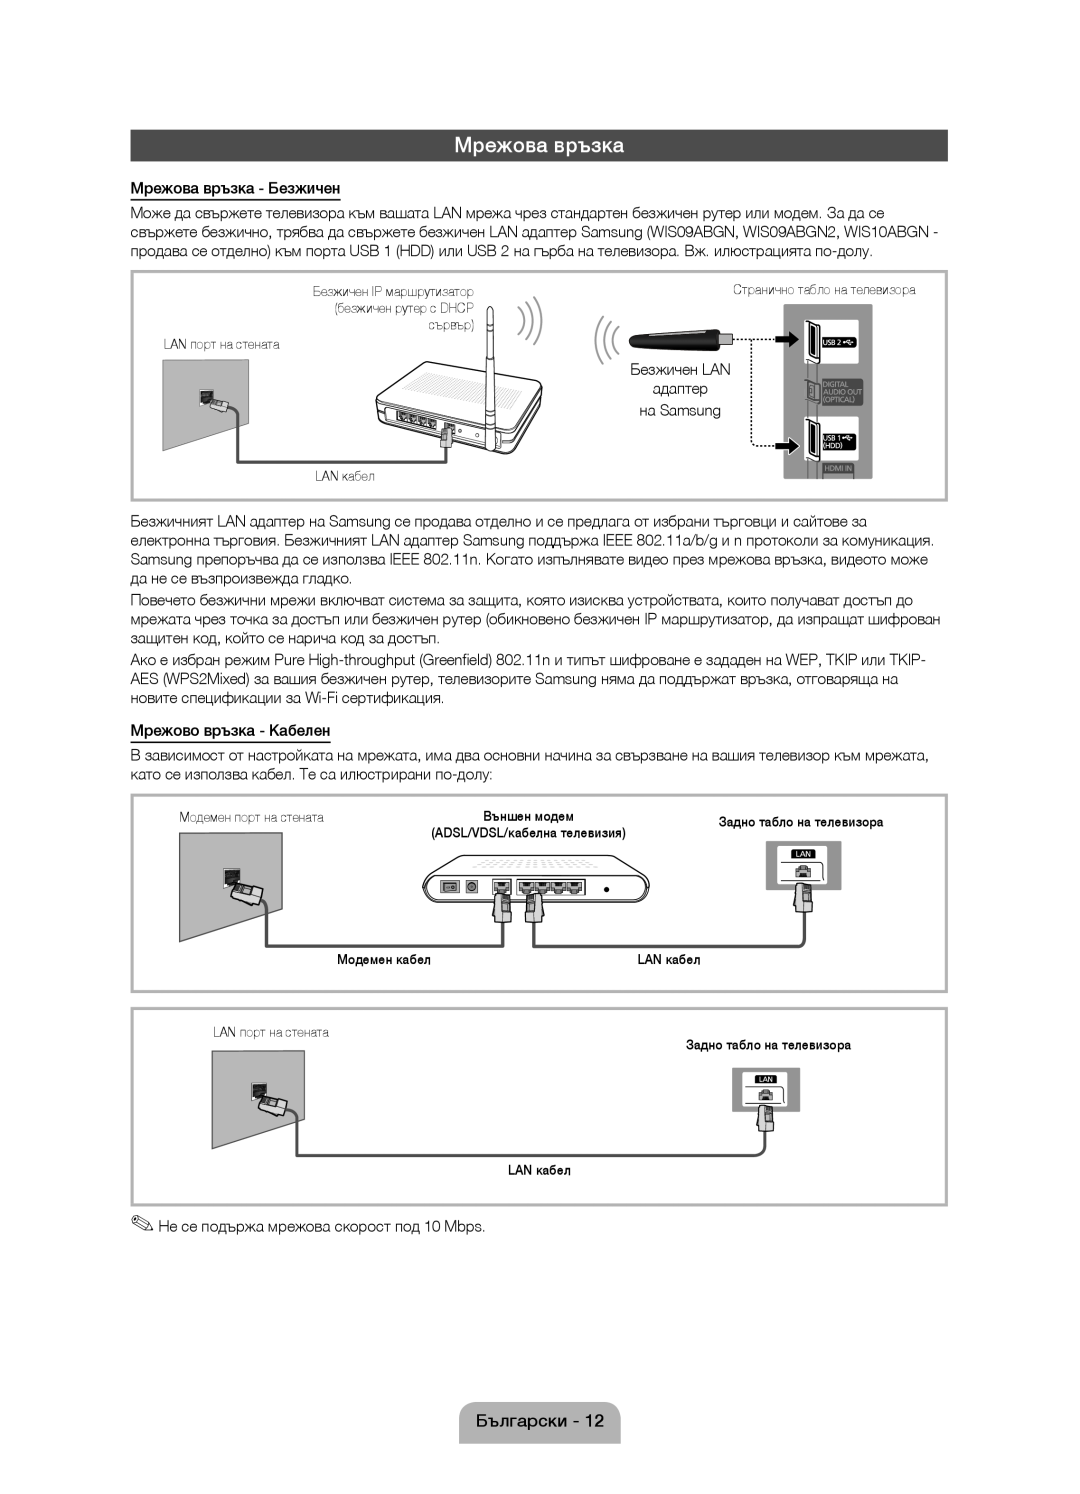 Samsung UE46D5000PWXZT manual Мрежова връзка - Безжичен, да не се възпроизвежда гладко, Мрежово връзка - Кабелен 